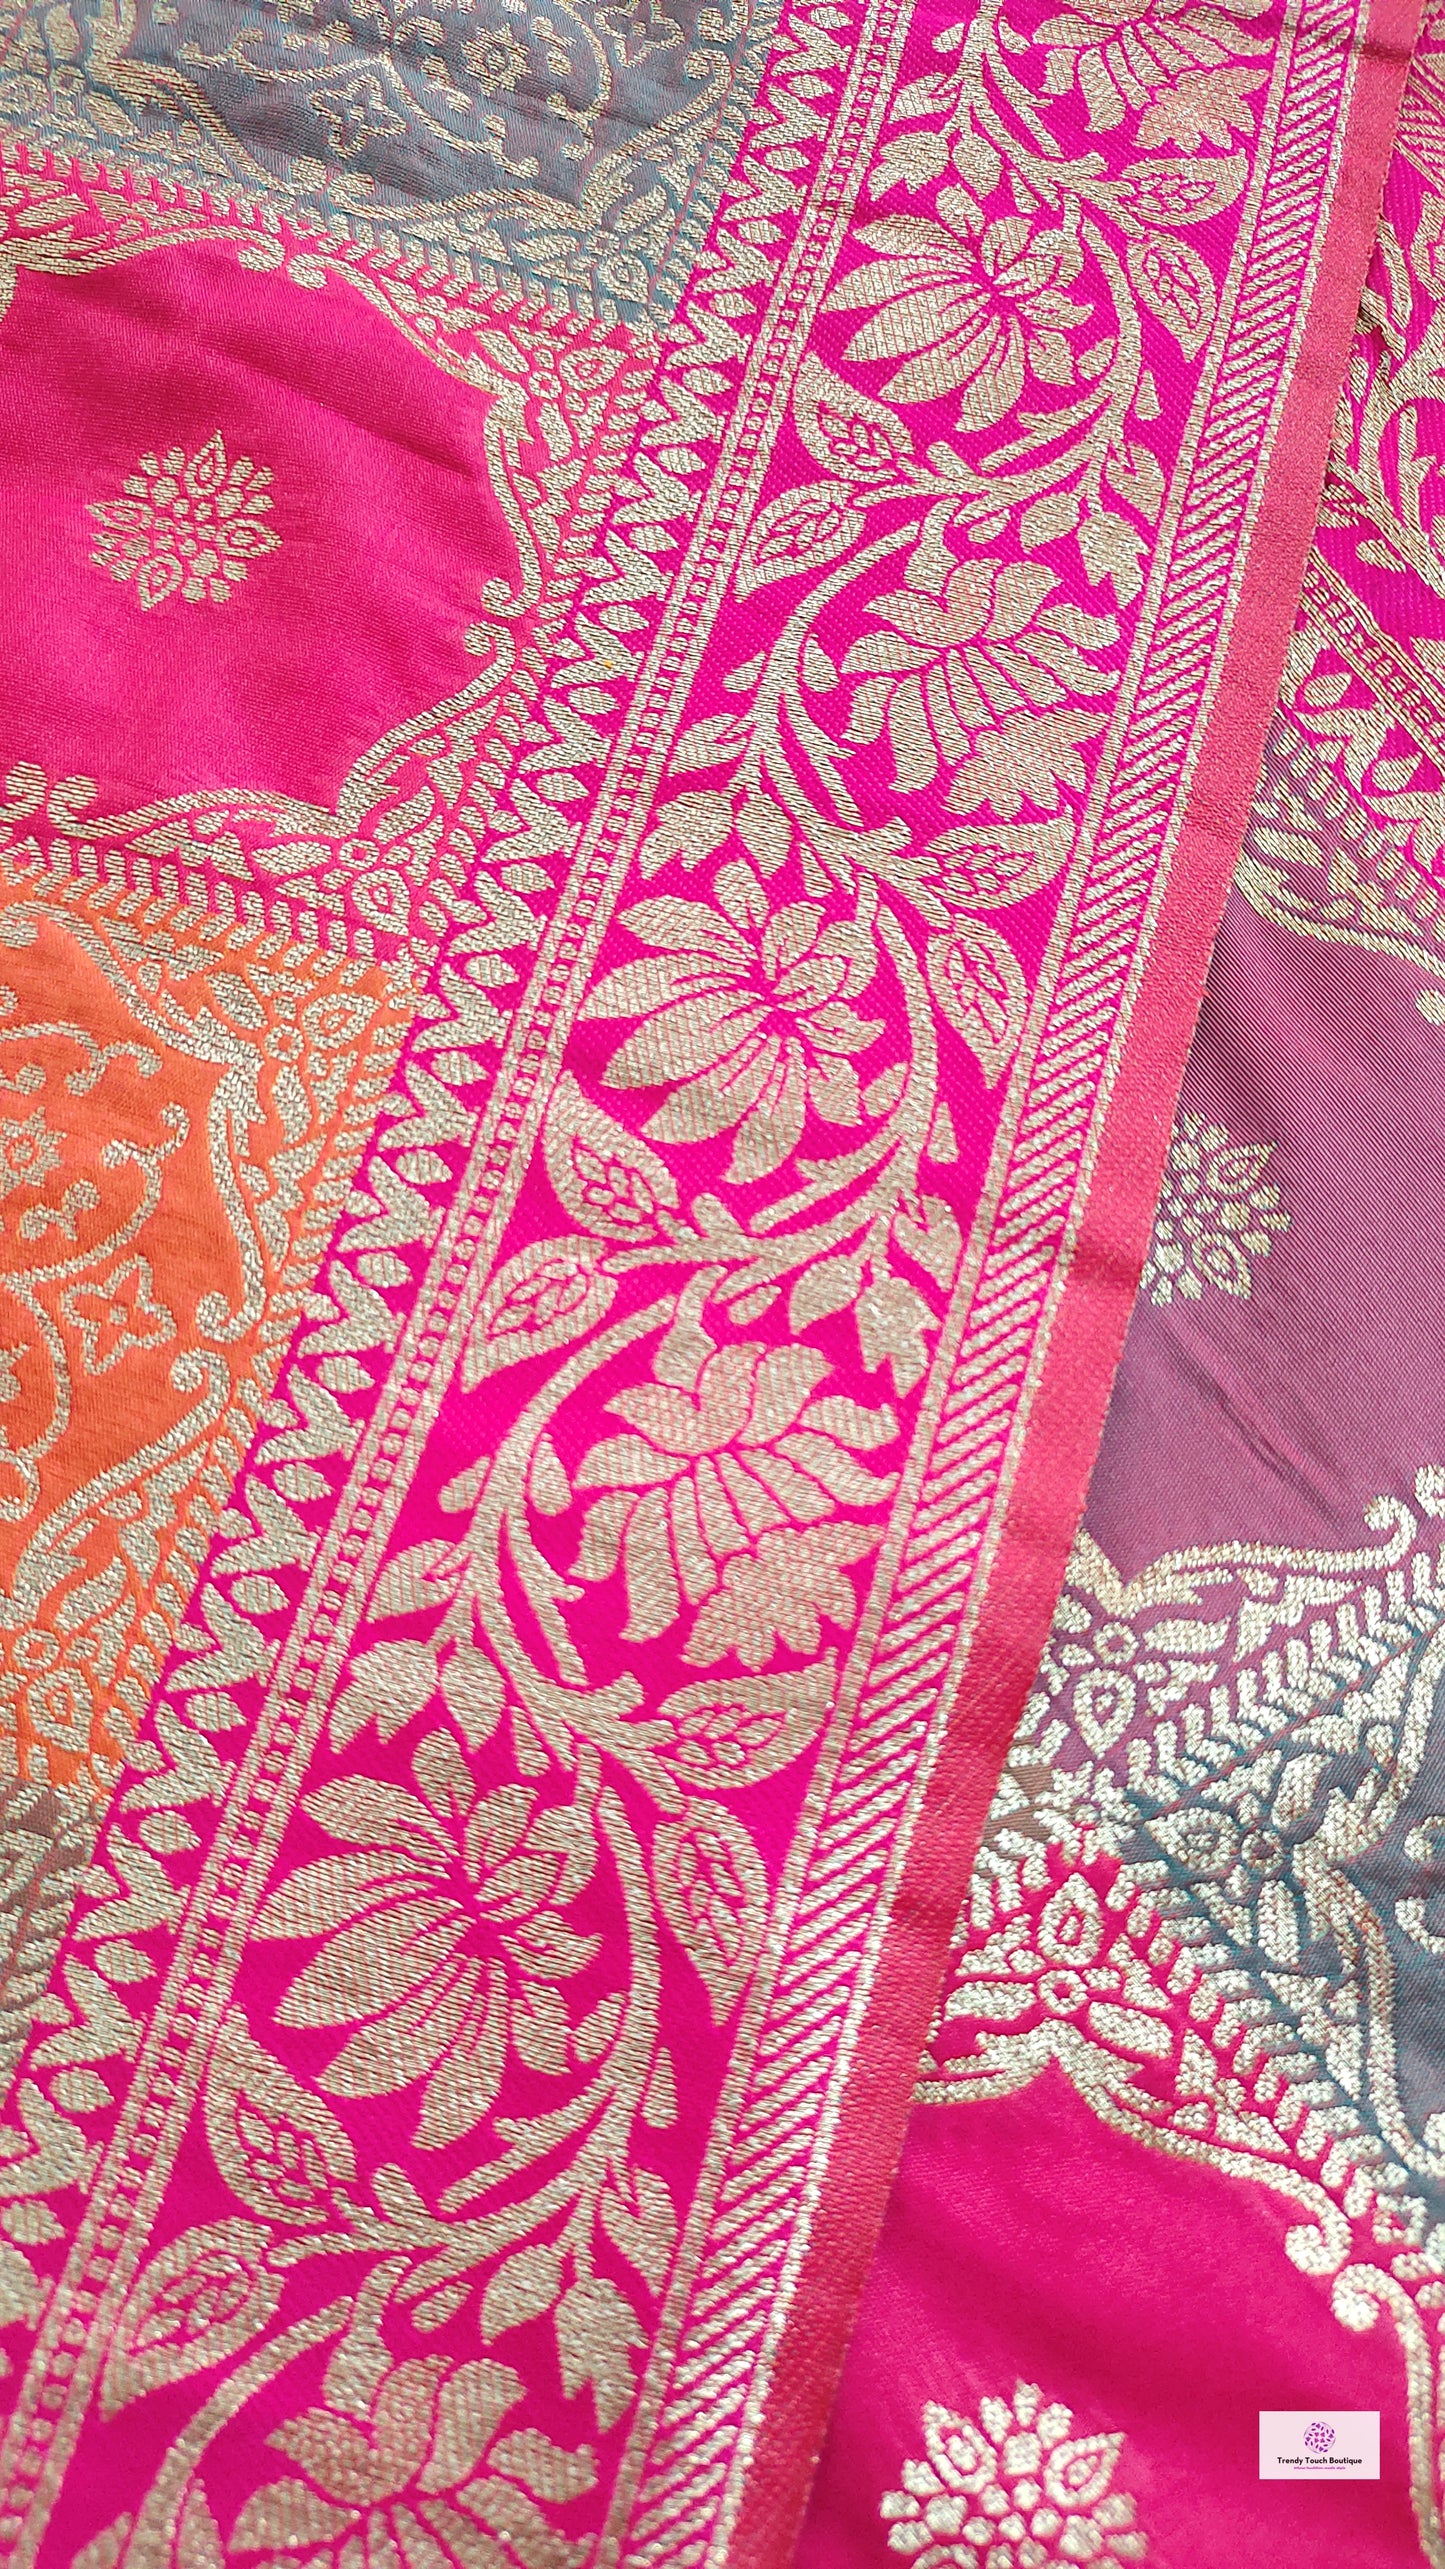 Wedding wear saree pink banarasi silk affordable party wear saree zari work marriage function saree